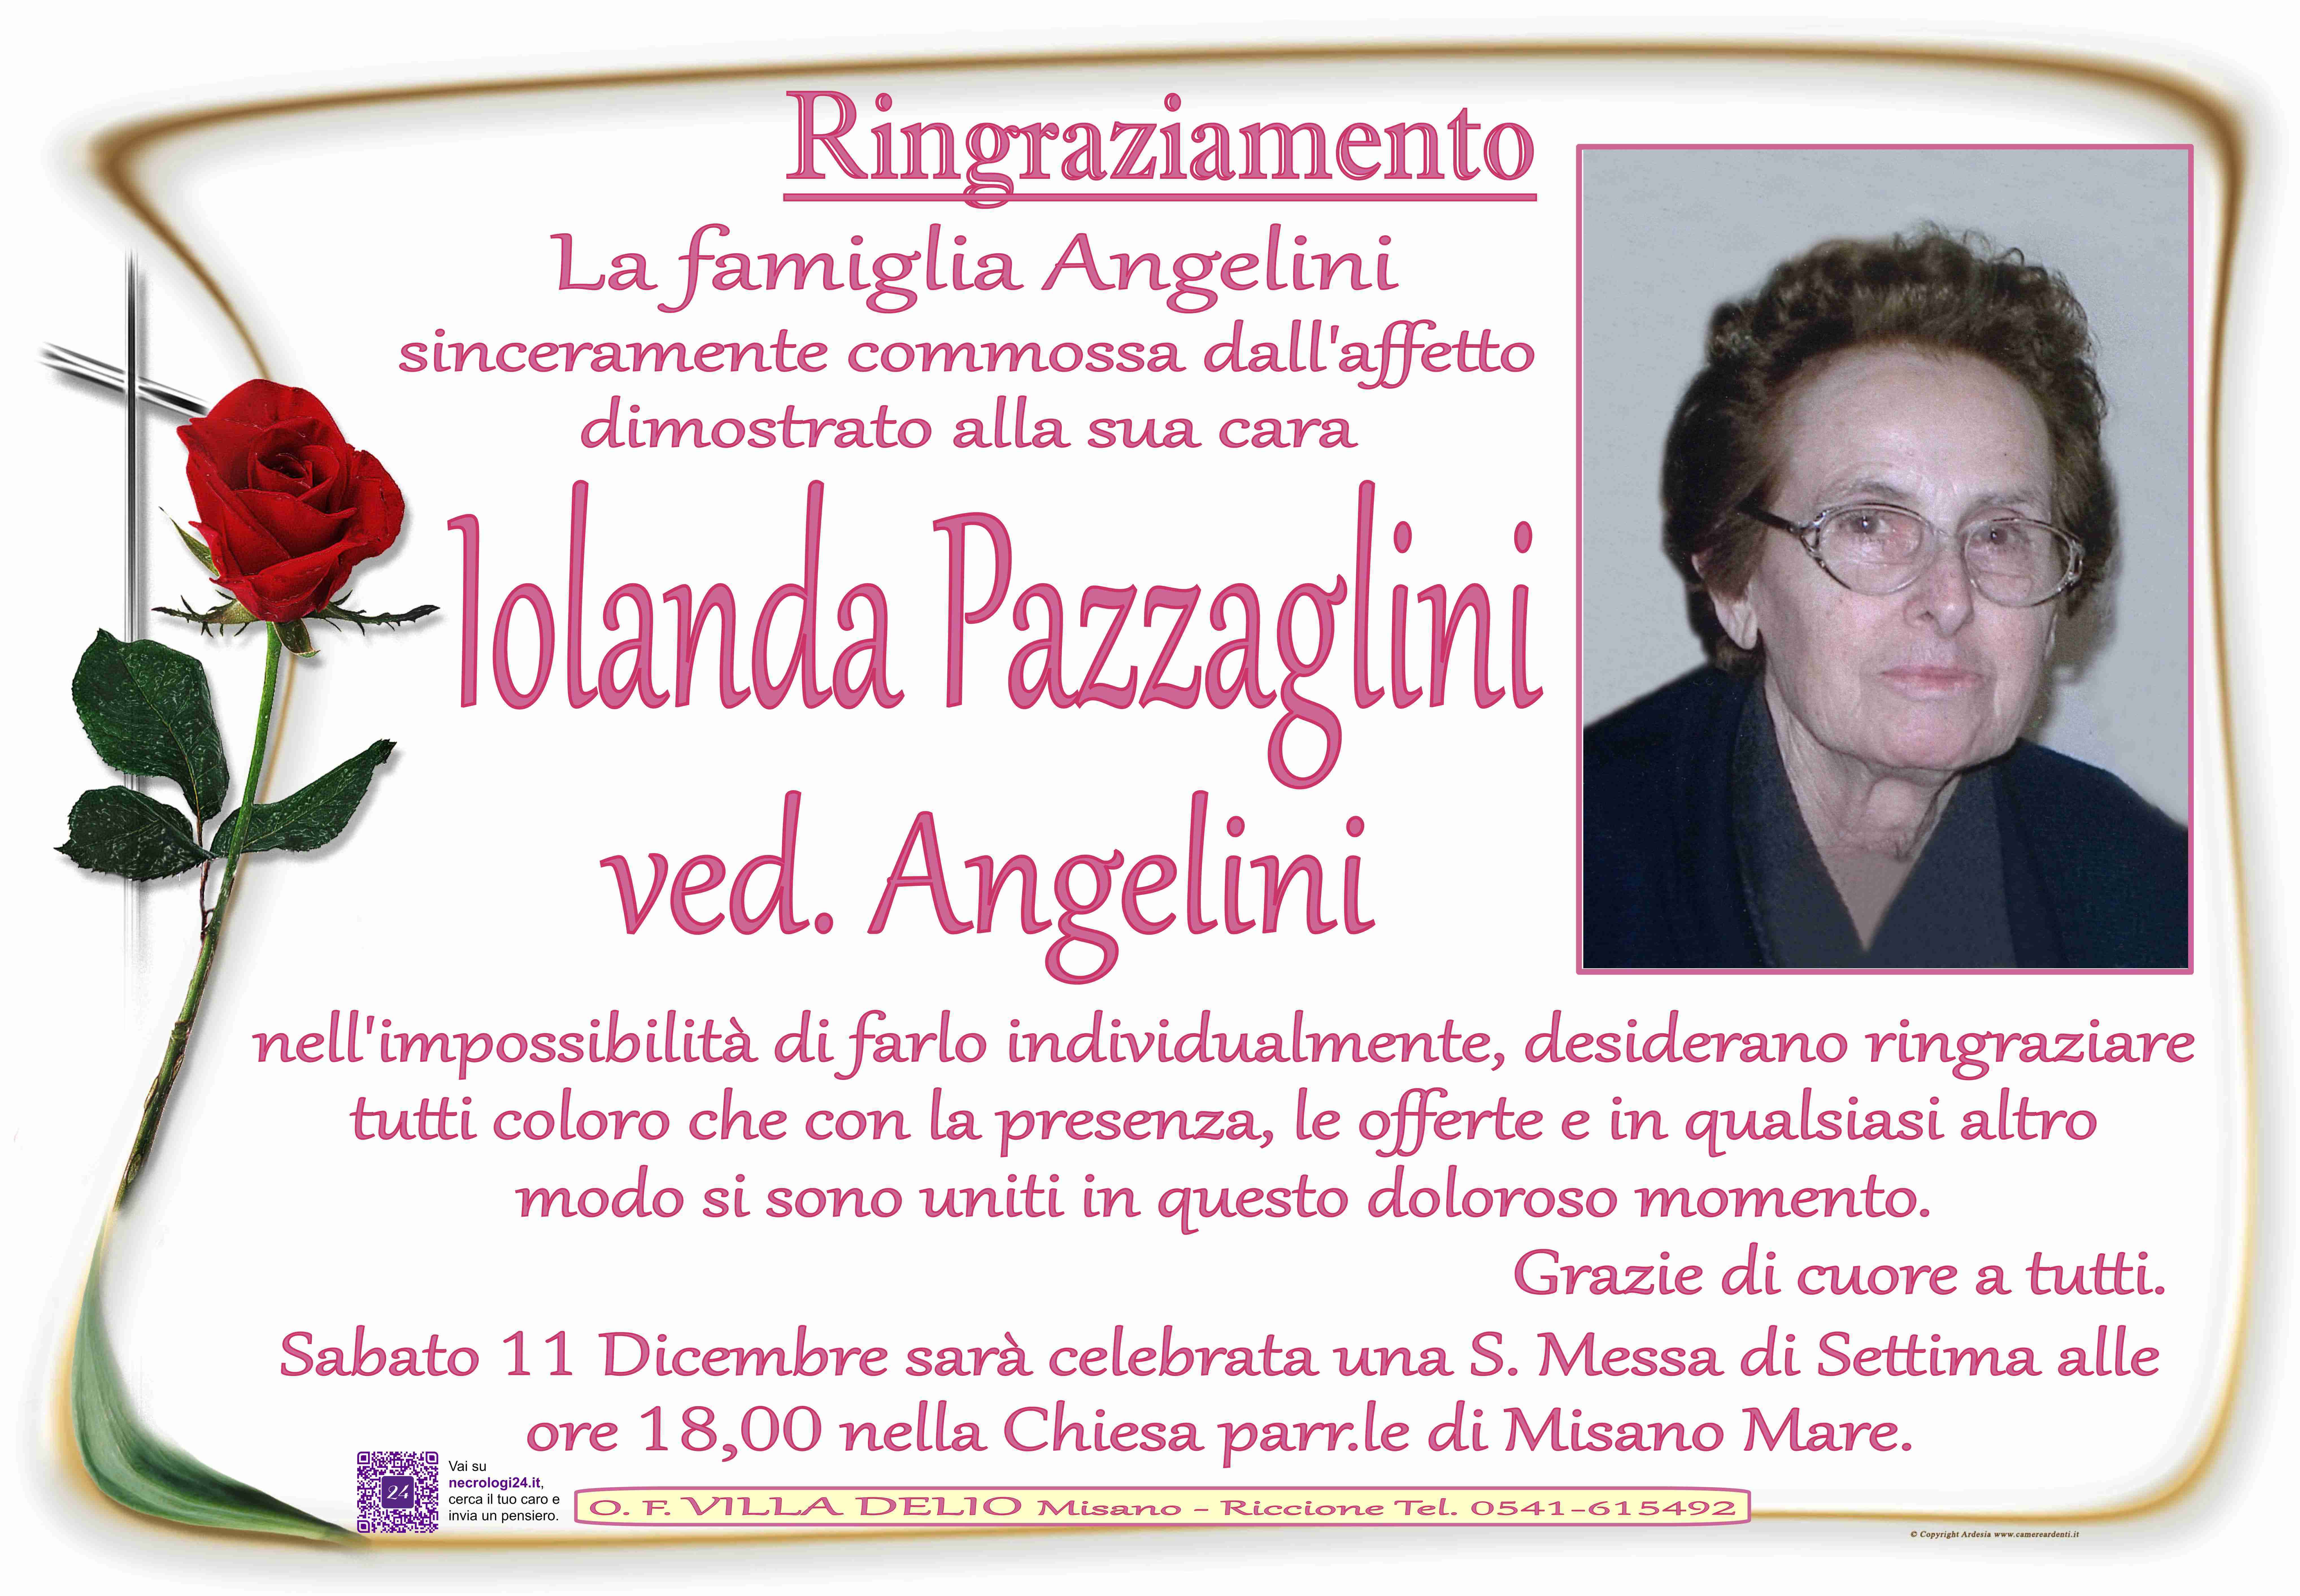 Iolanda Pazzaglini